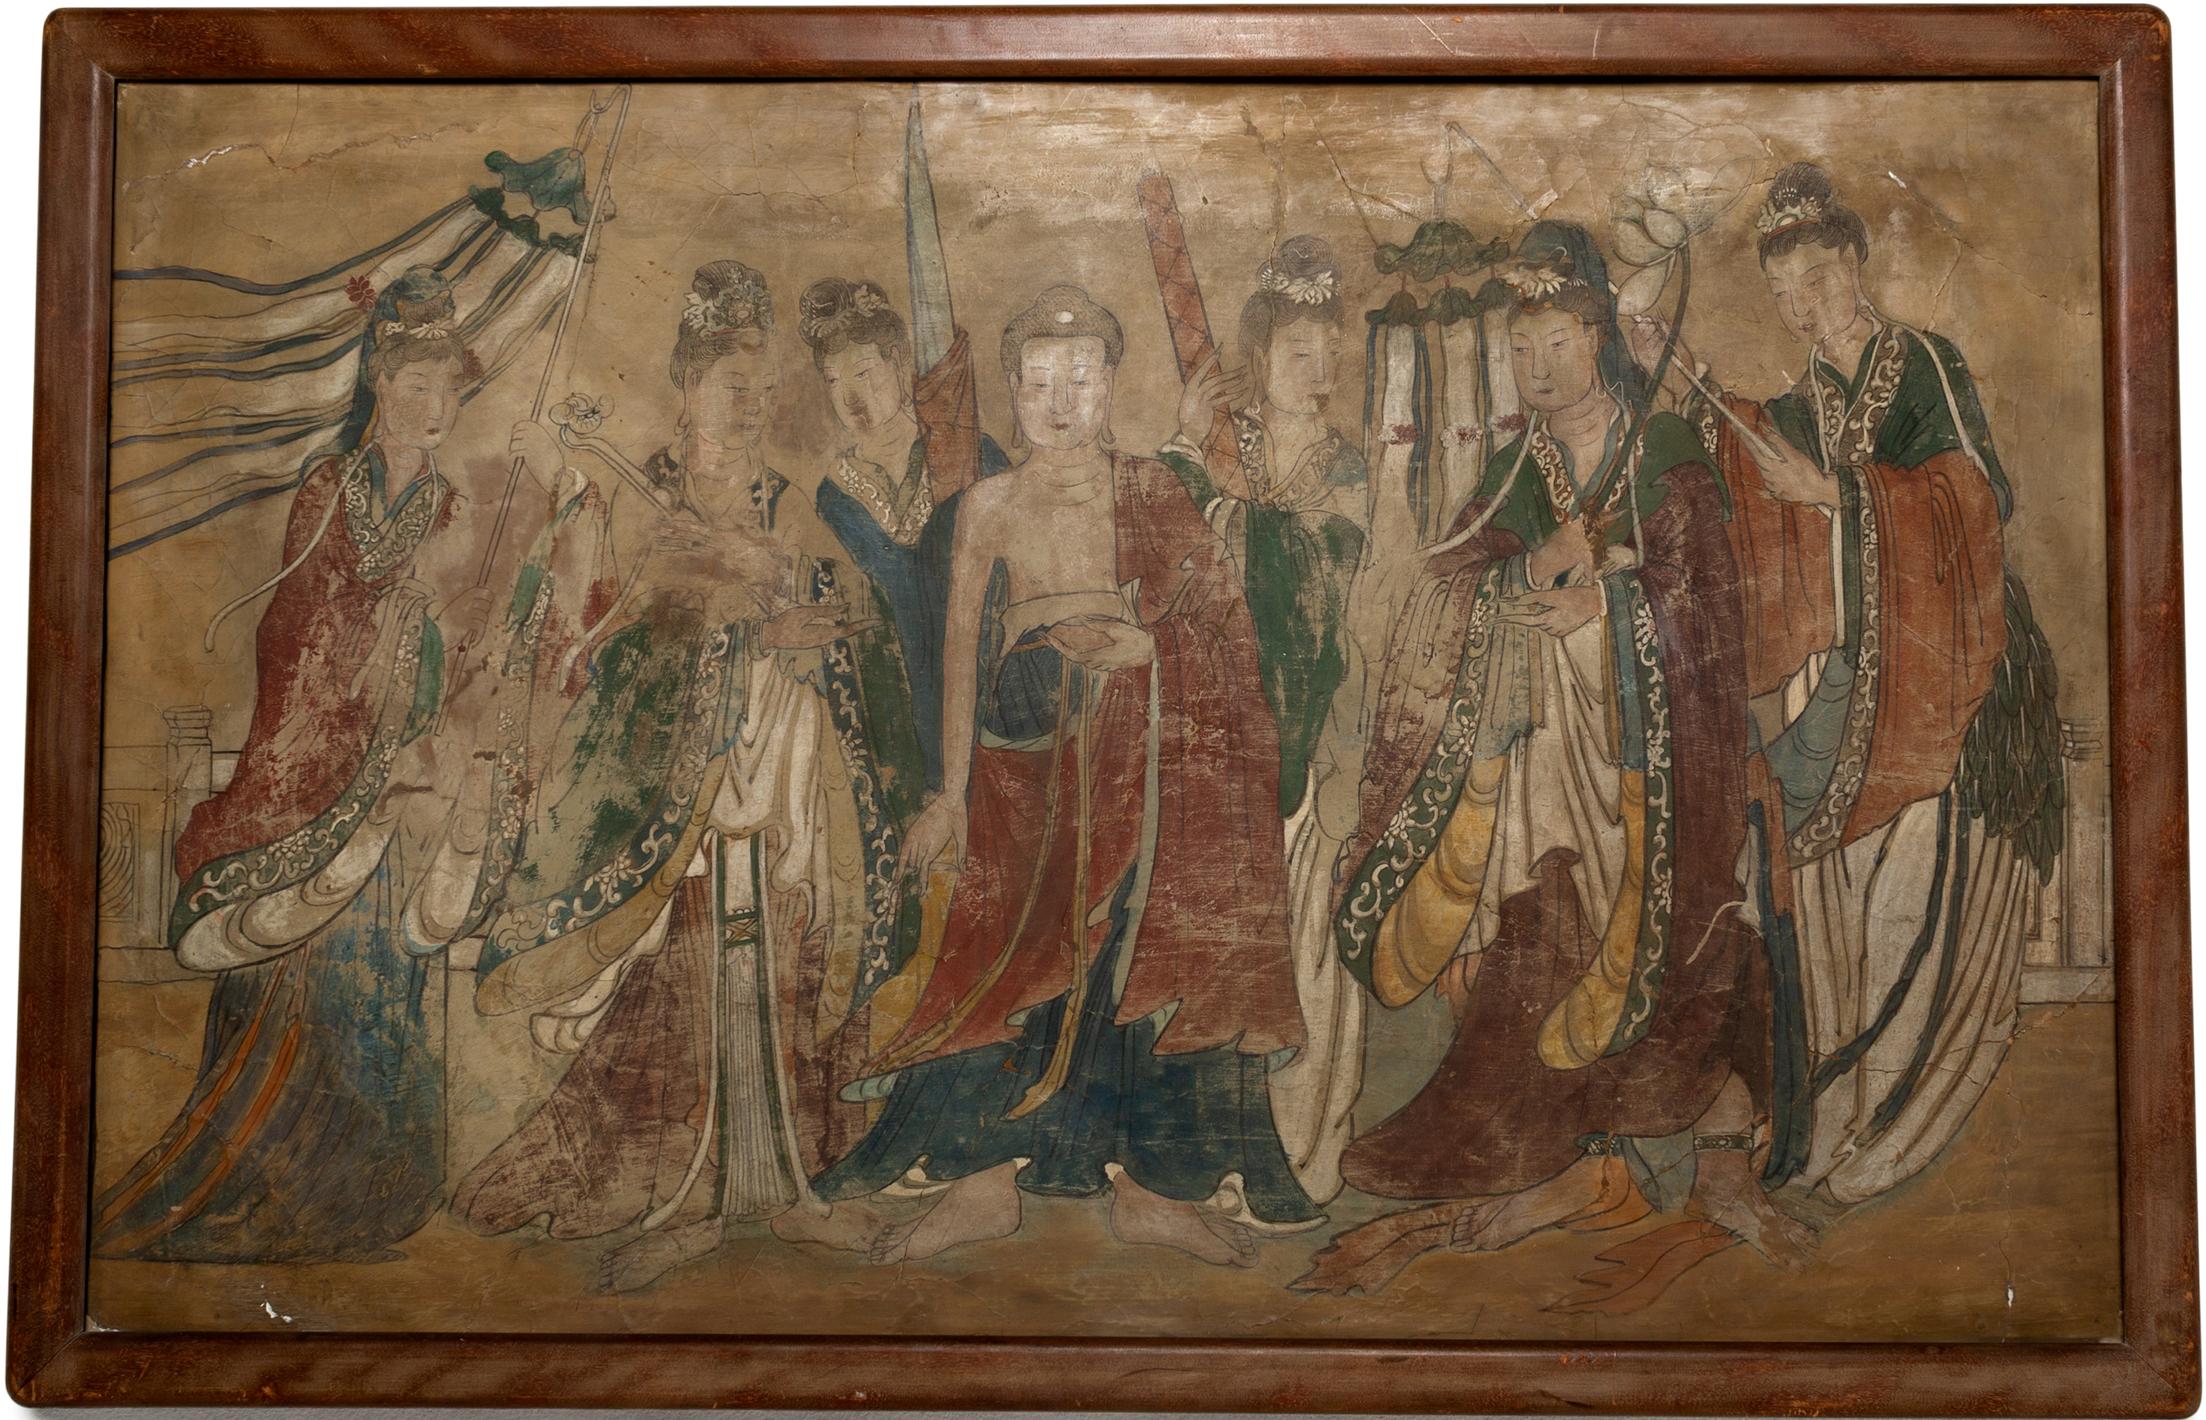 « Bouddha flanqué par des prêtresses féminines », gouache sur panneau de bois, vers 1600